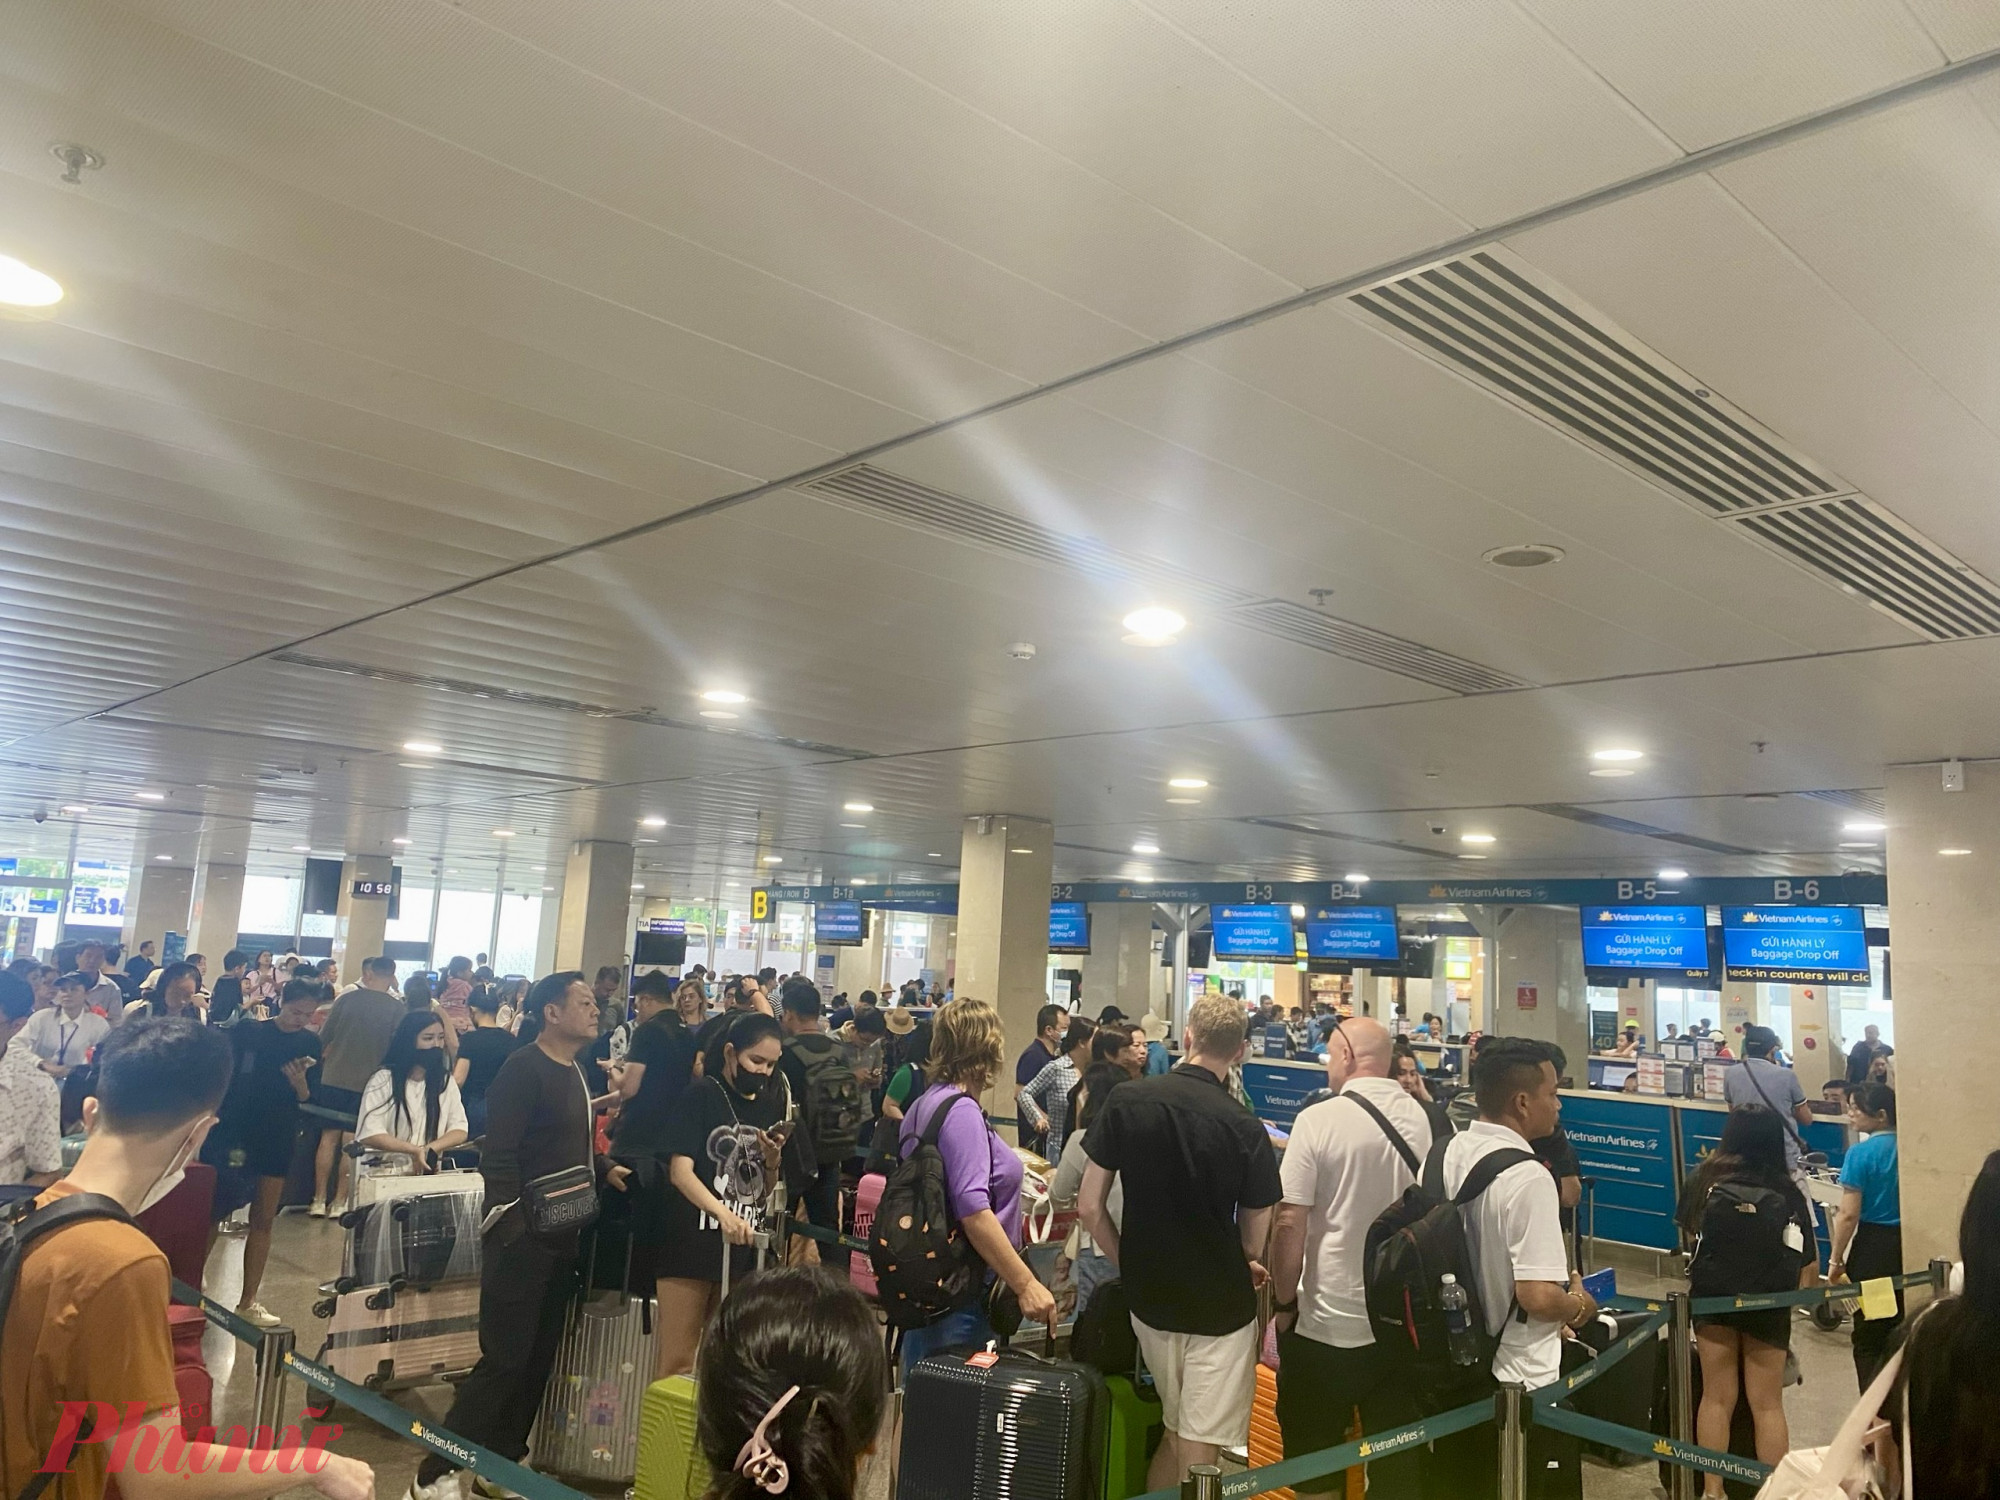 Khách hàng làm thủ tục hàng không tại quầy checkin của hãng Vietnam AIrlines tại Cảng HKQT Tân Sơn Nhất. Ảnh: Quốc Thái